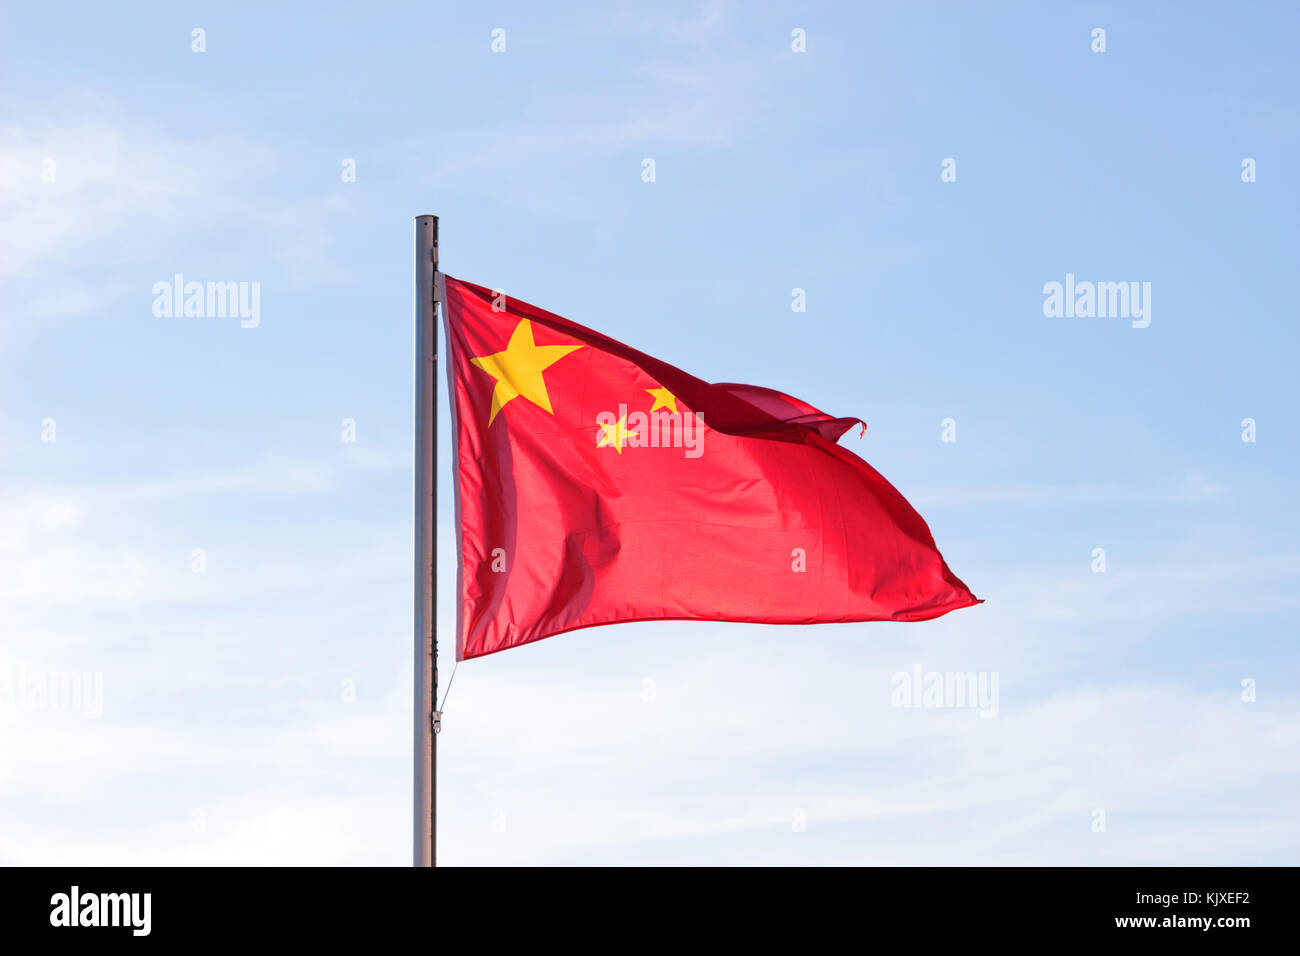 Rote fahne mit gelbem stern -Fotos und -Bildmaterial in hoher Auflösung –  Alamy